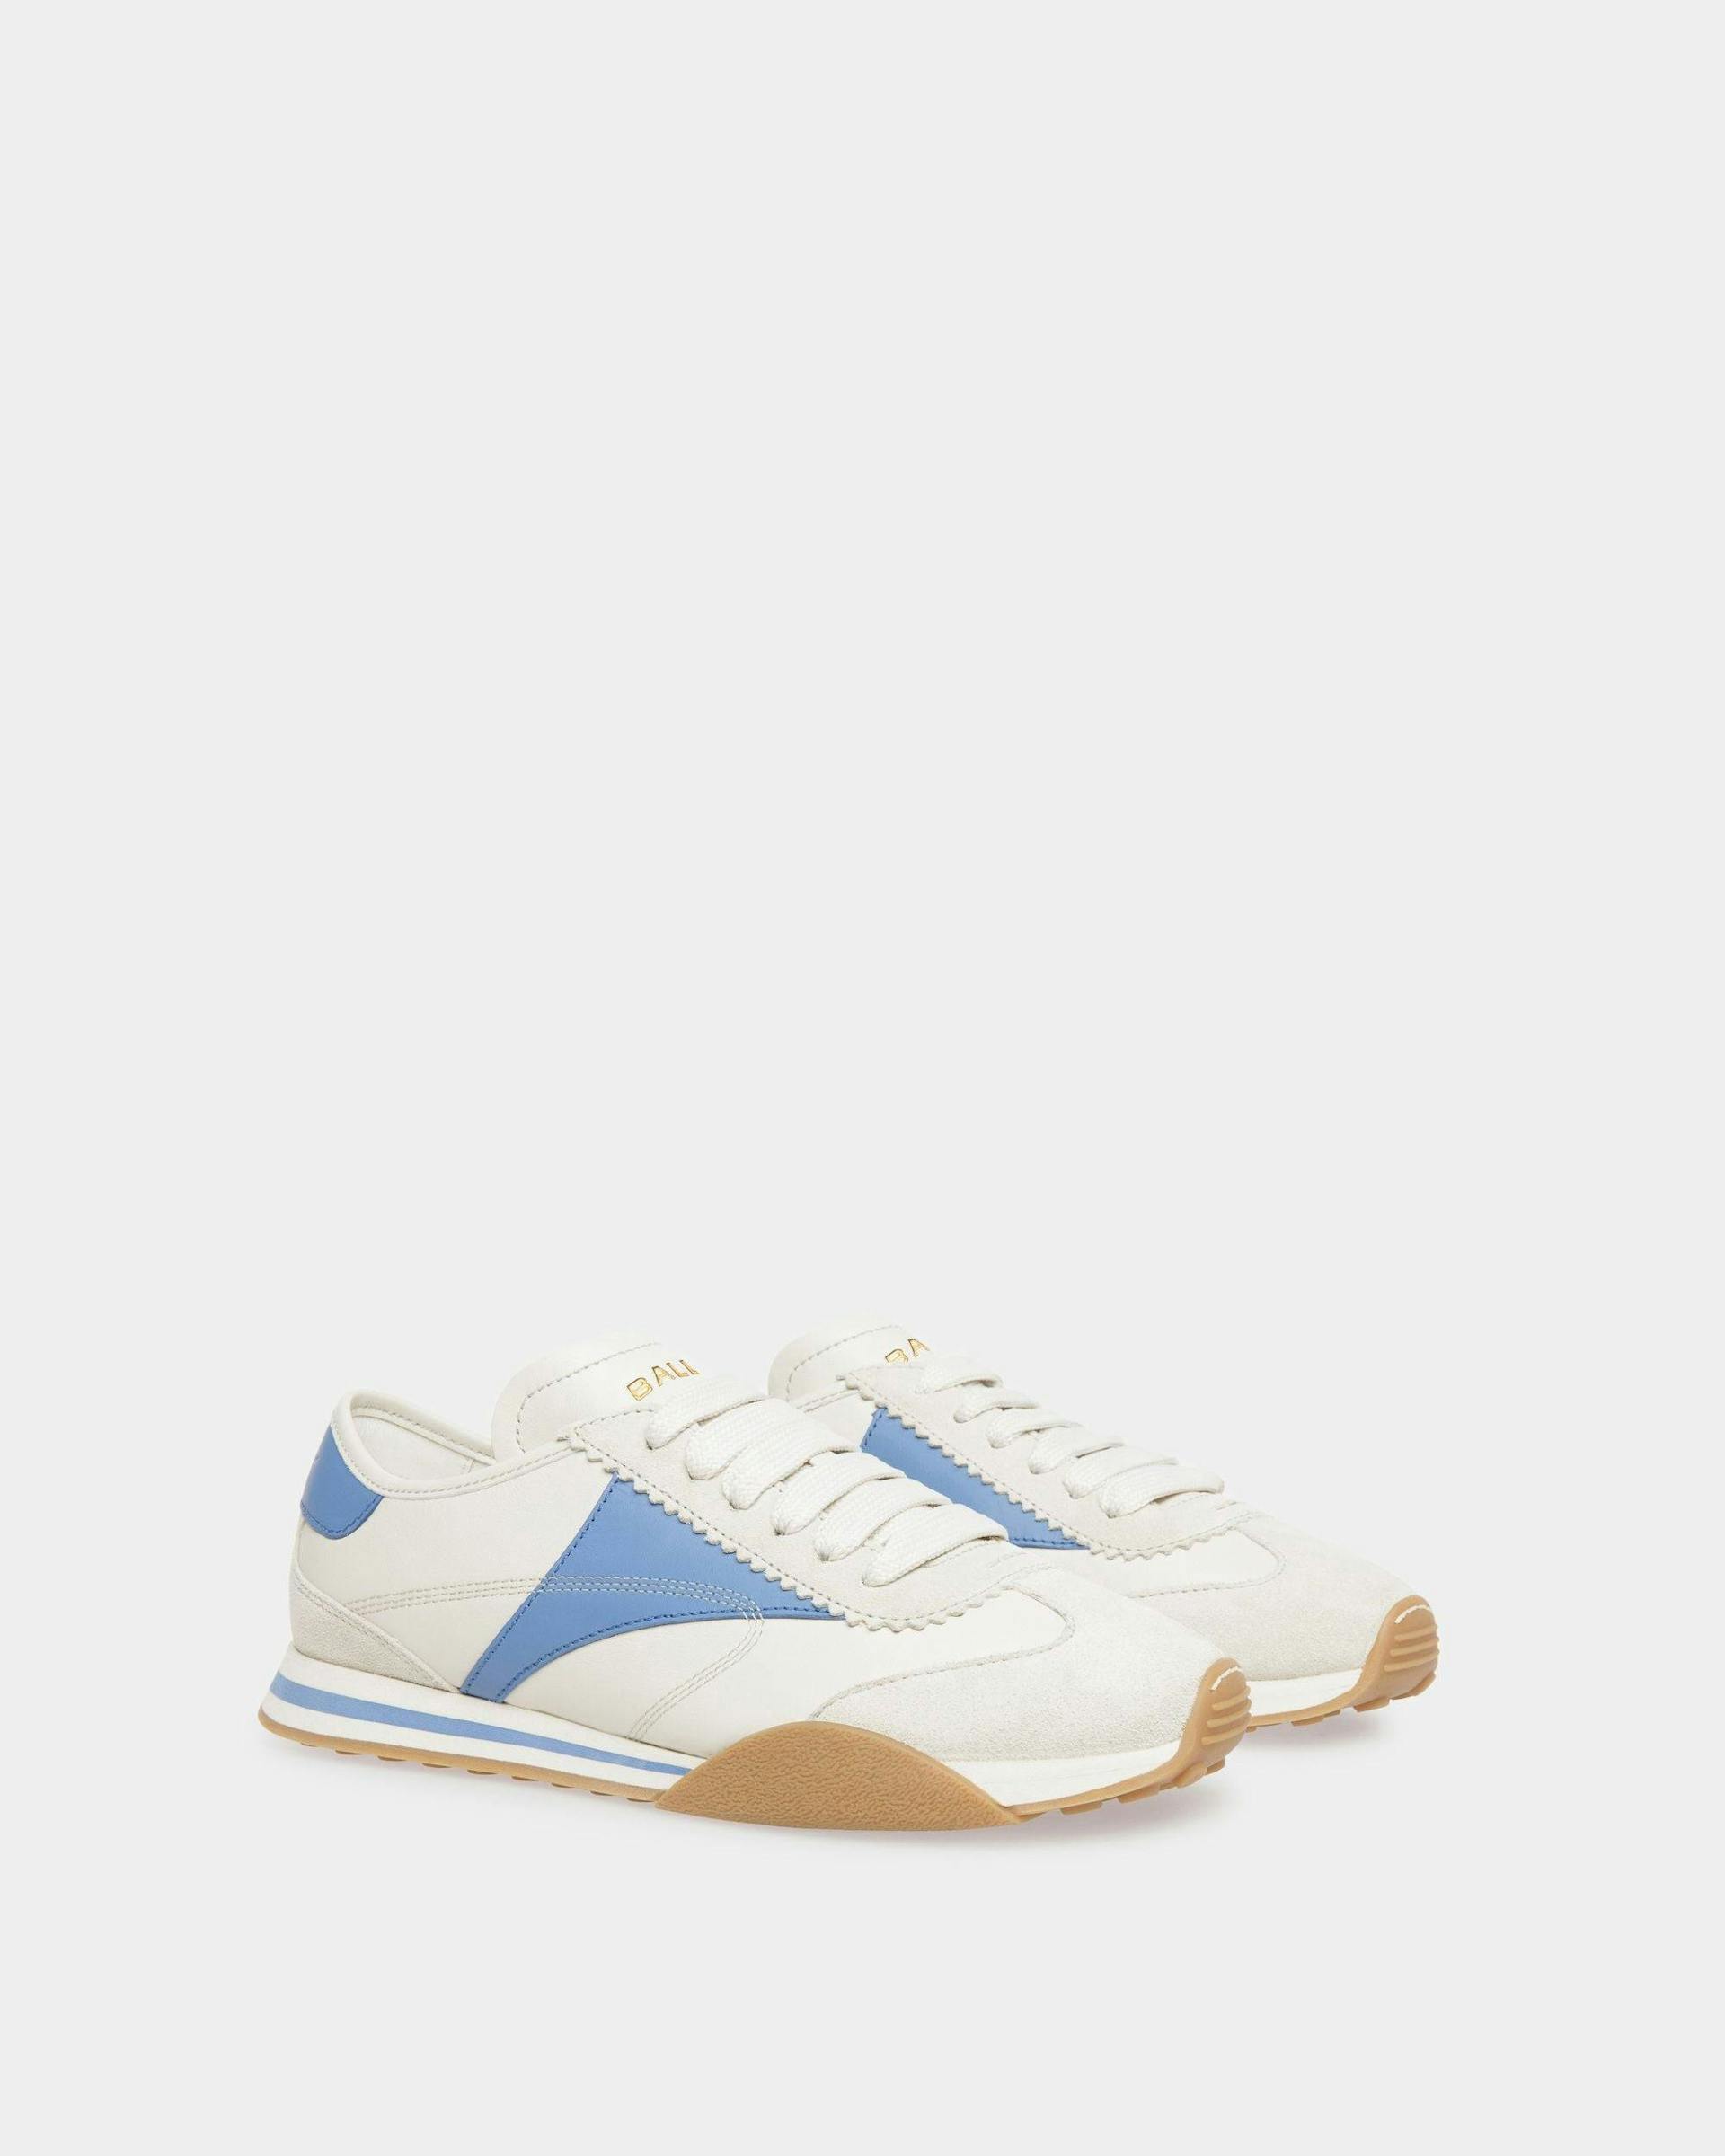 Sneakers Sussex En cuir blanc poussière et bleu - Femme - Bally - 02